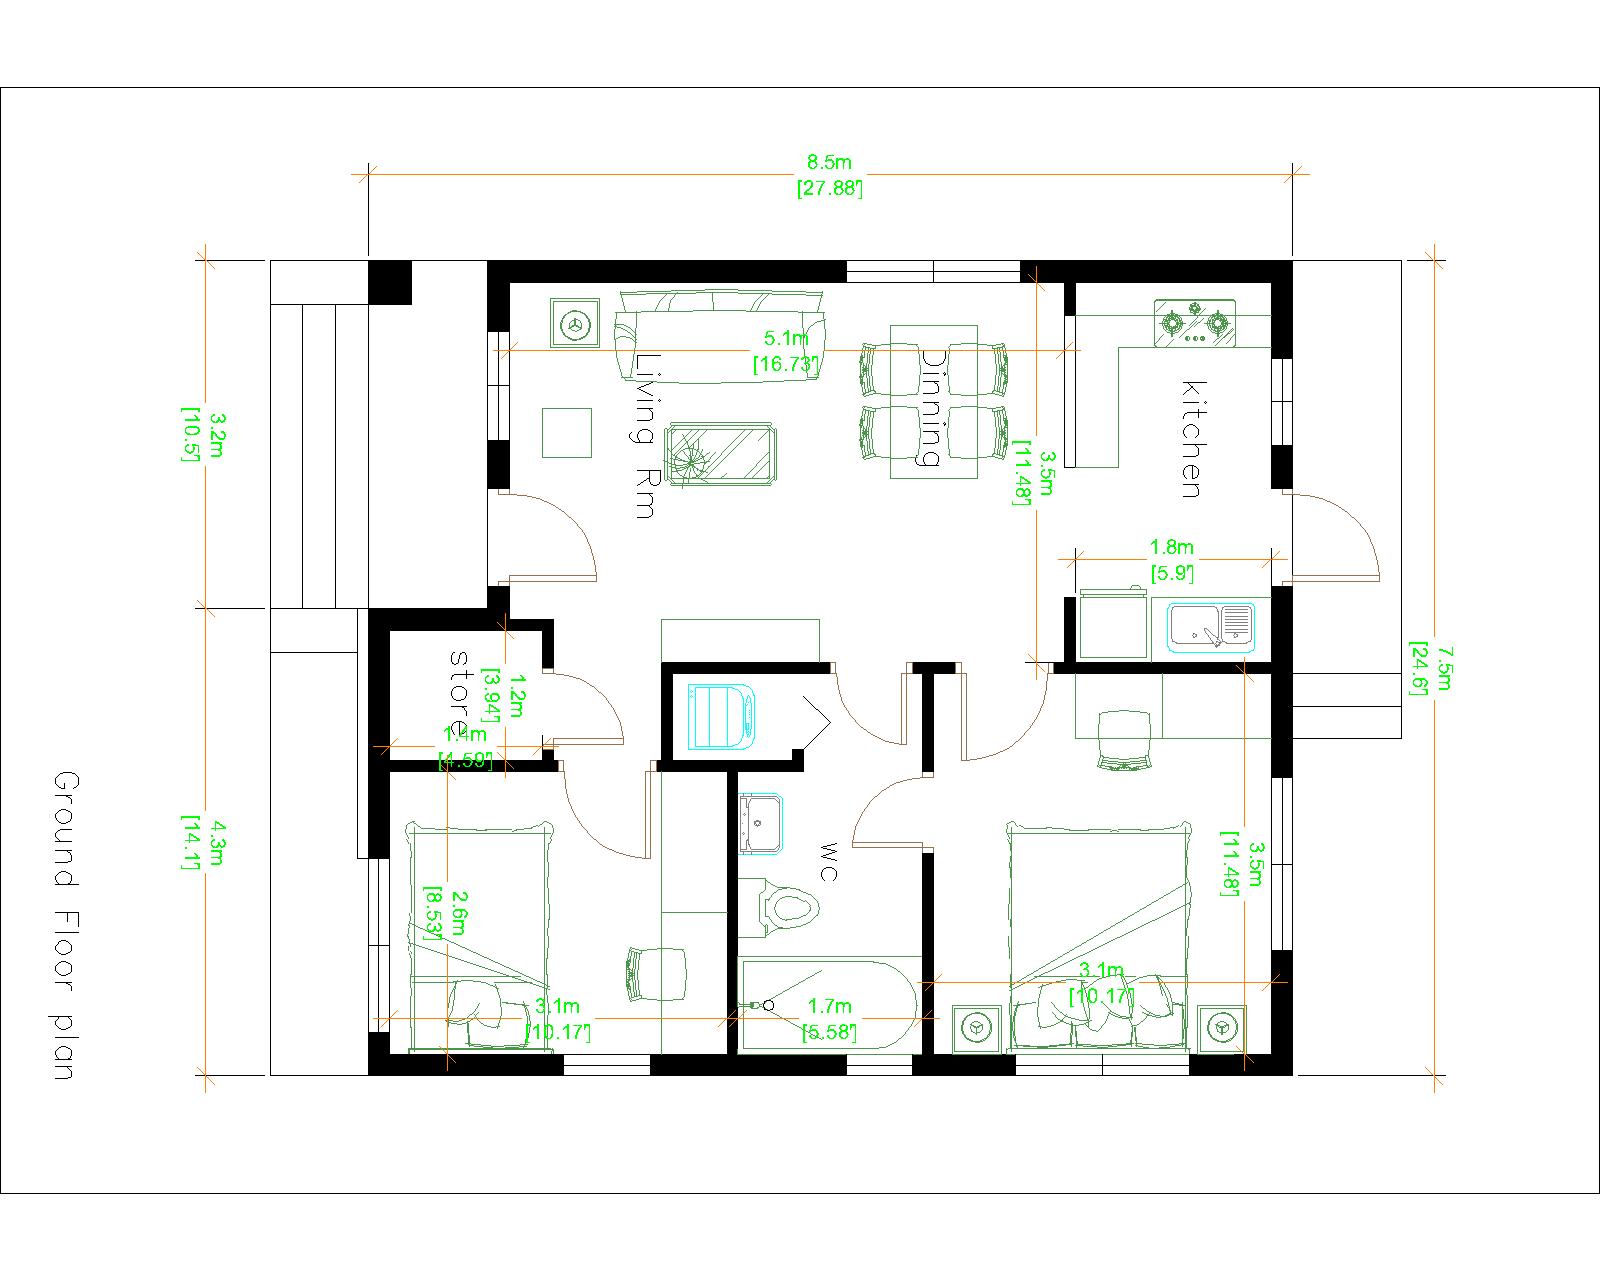 House Design 3d 7.5x8.5 Meter 25x28 Feet 2 bedrooms Hip Roof